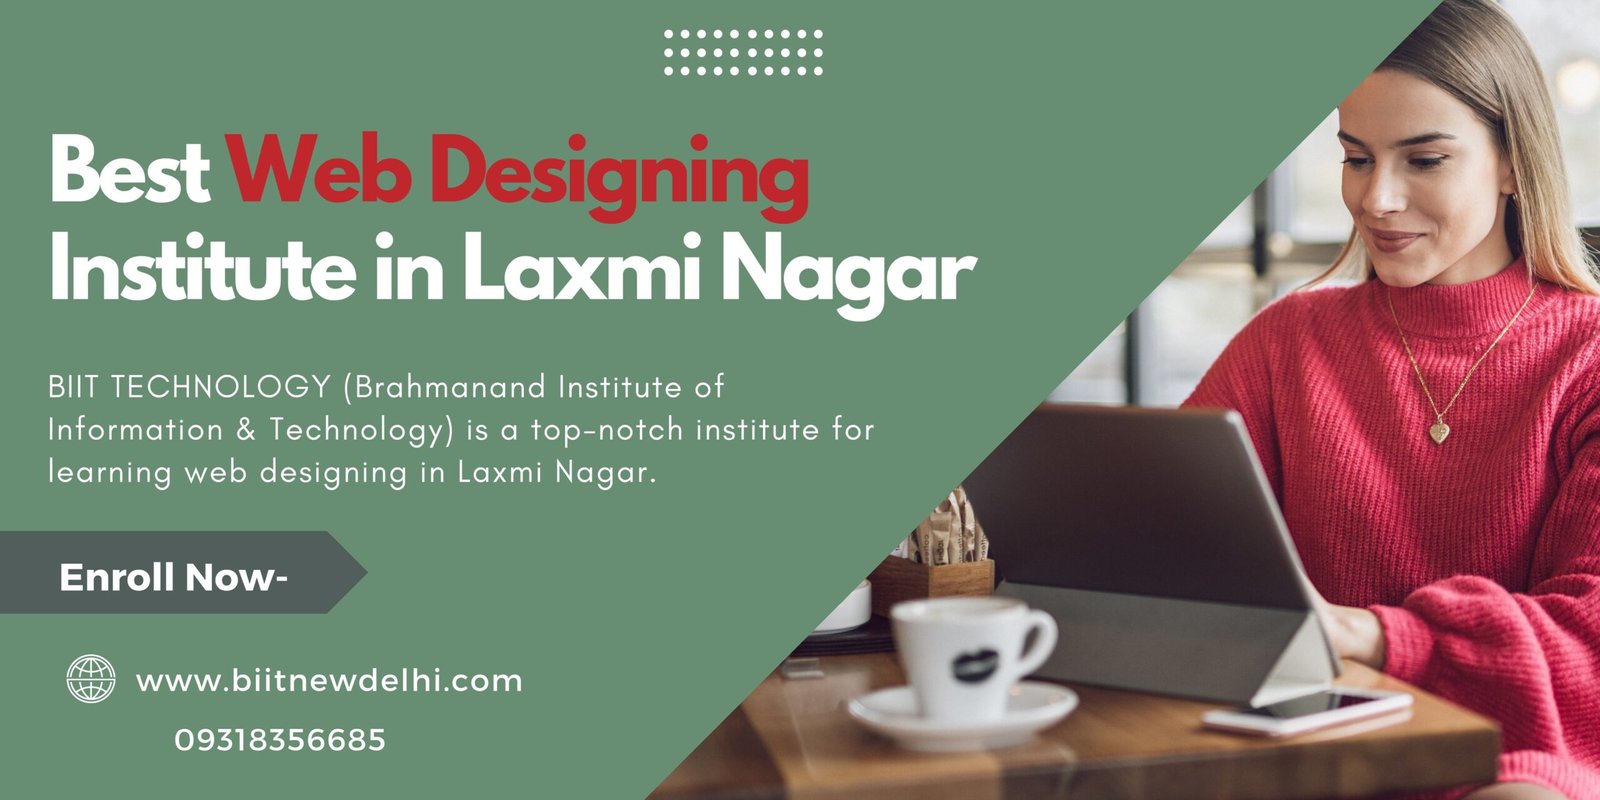 Best Web Designing Institute in Laxmi Nagar